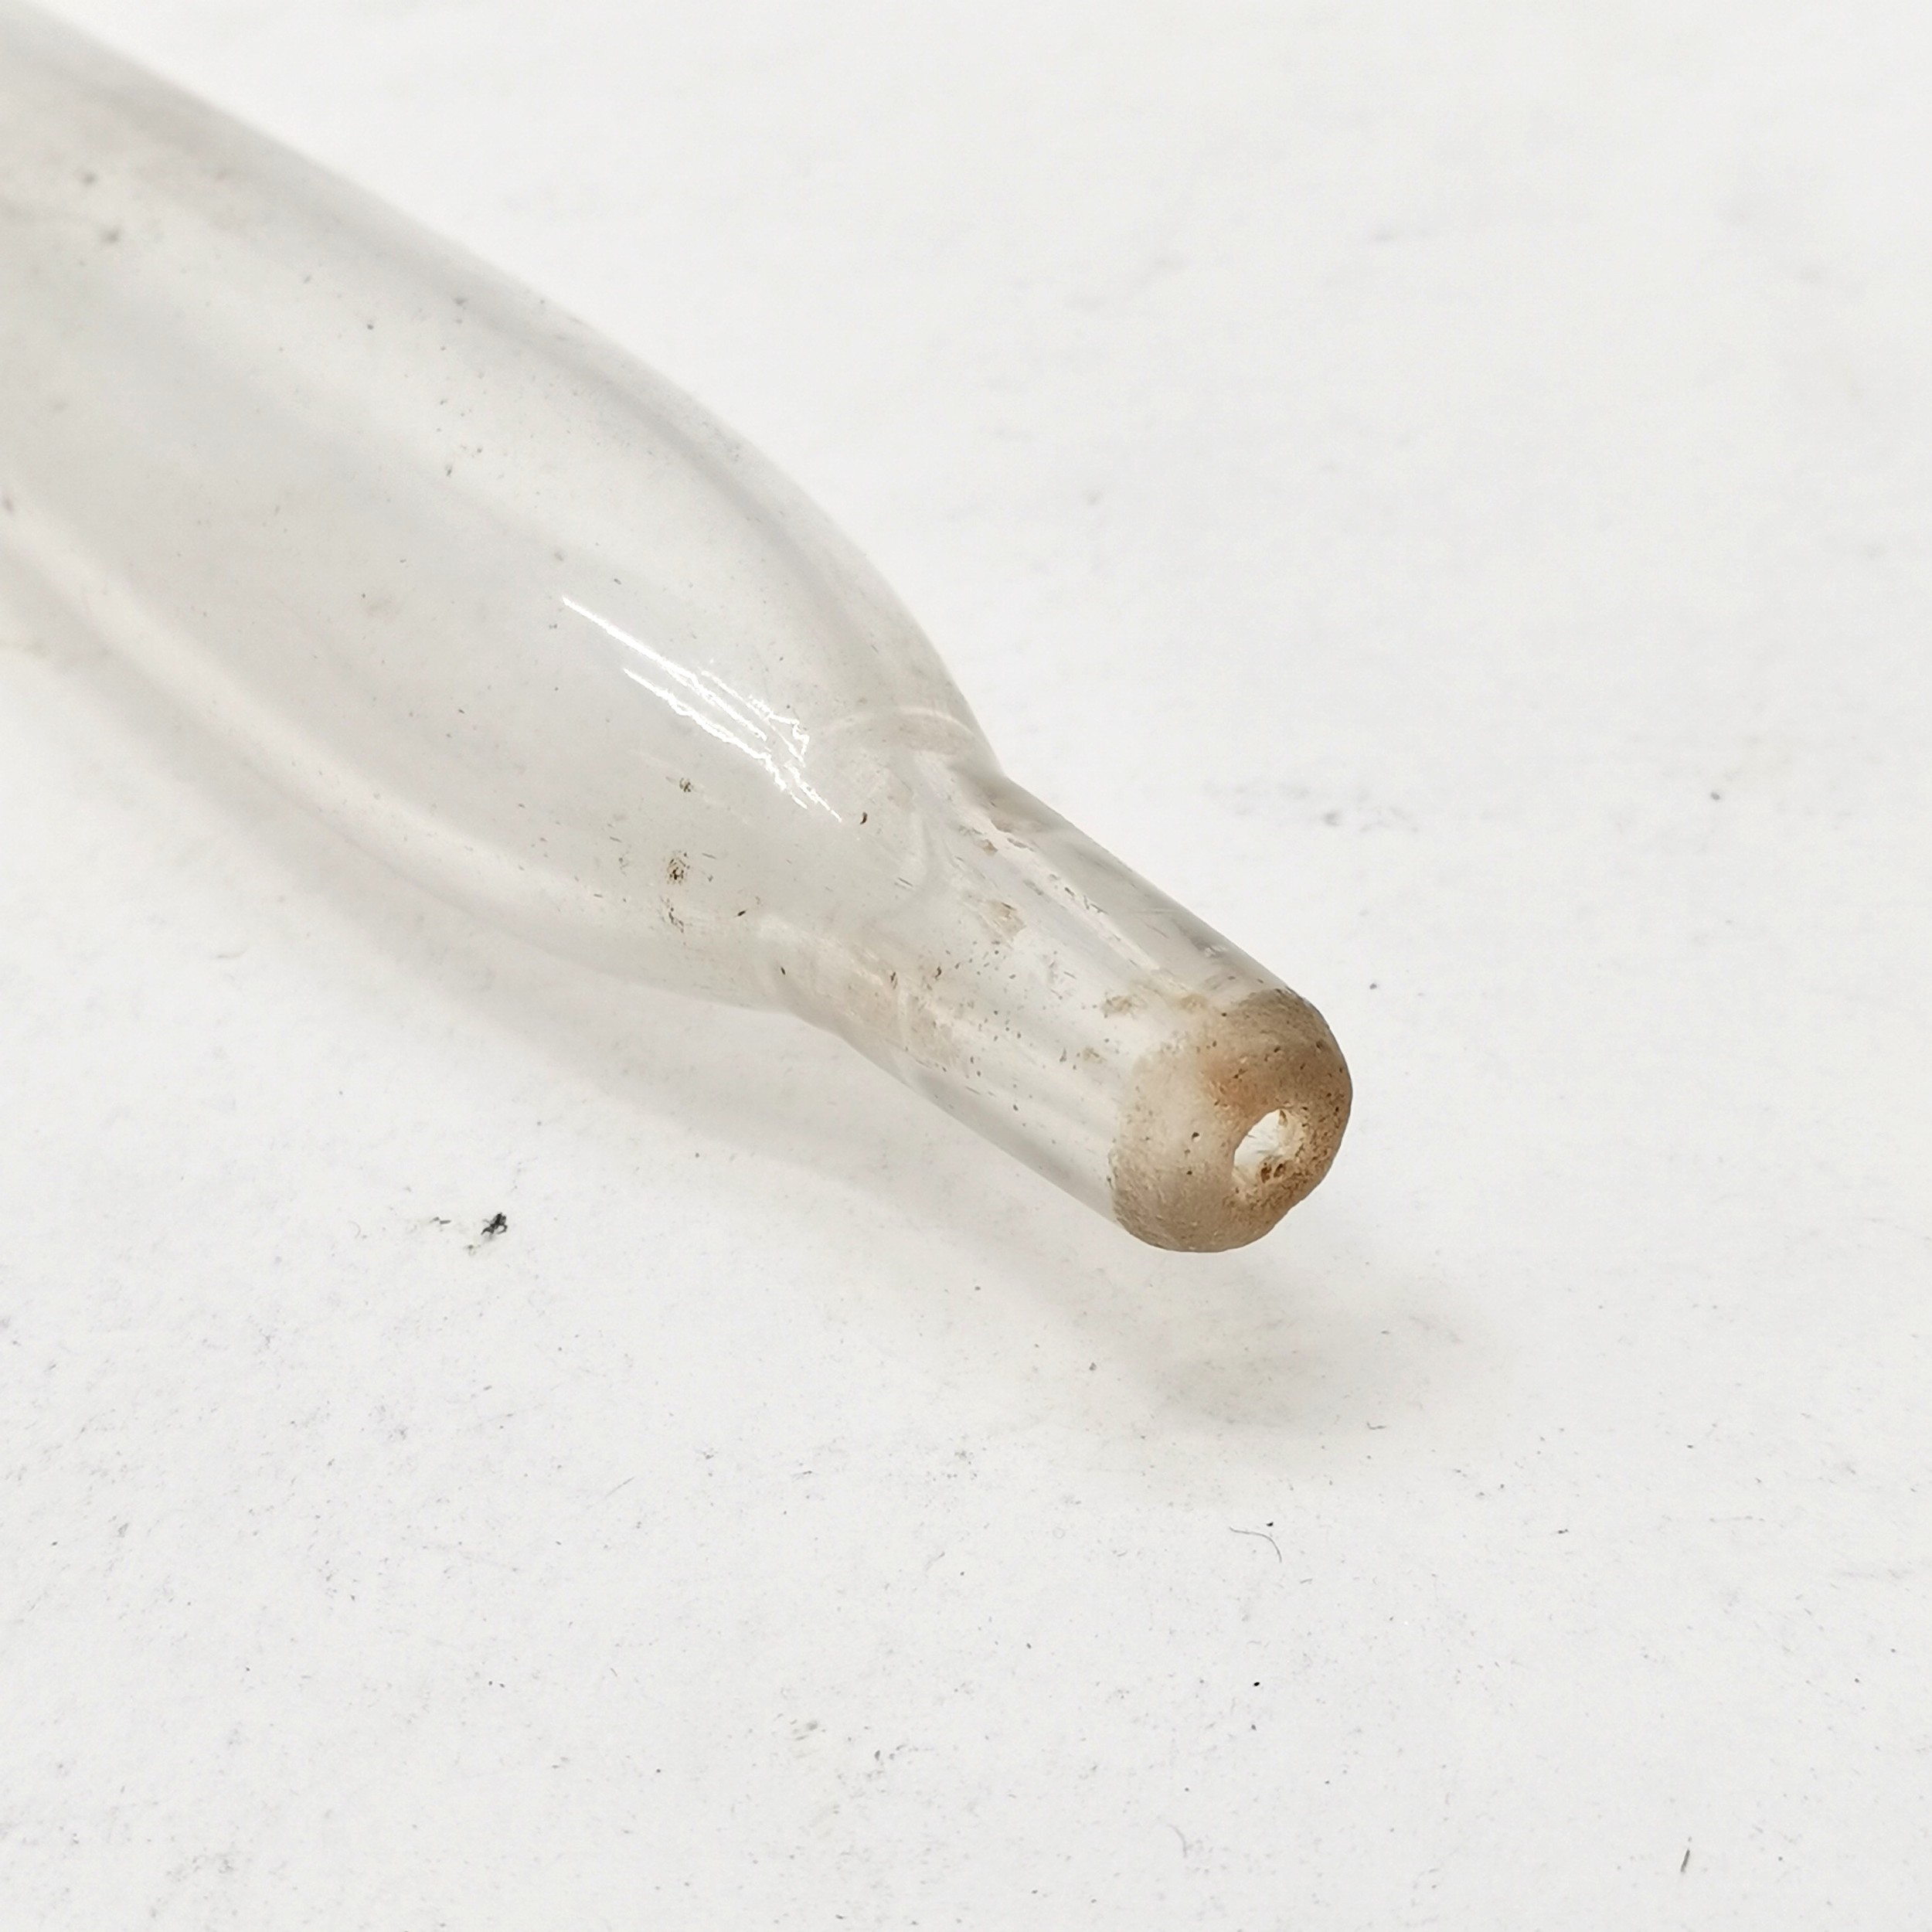 Antique glass wine tasting serving syringe, 39 cm length. - Image 3 of 3